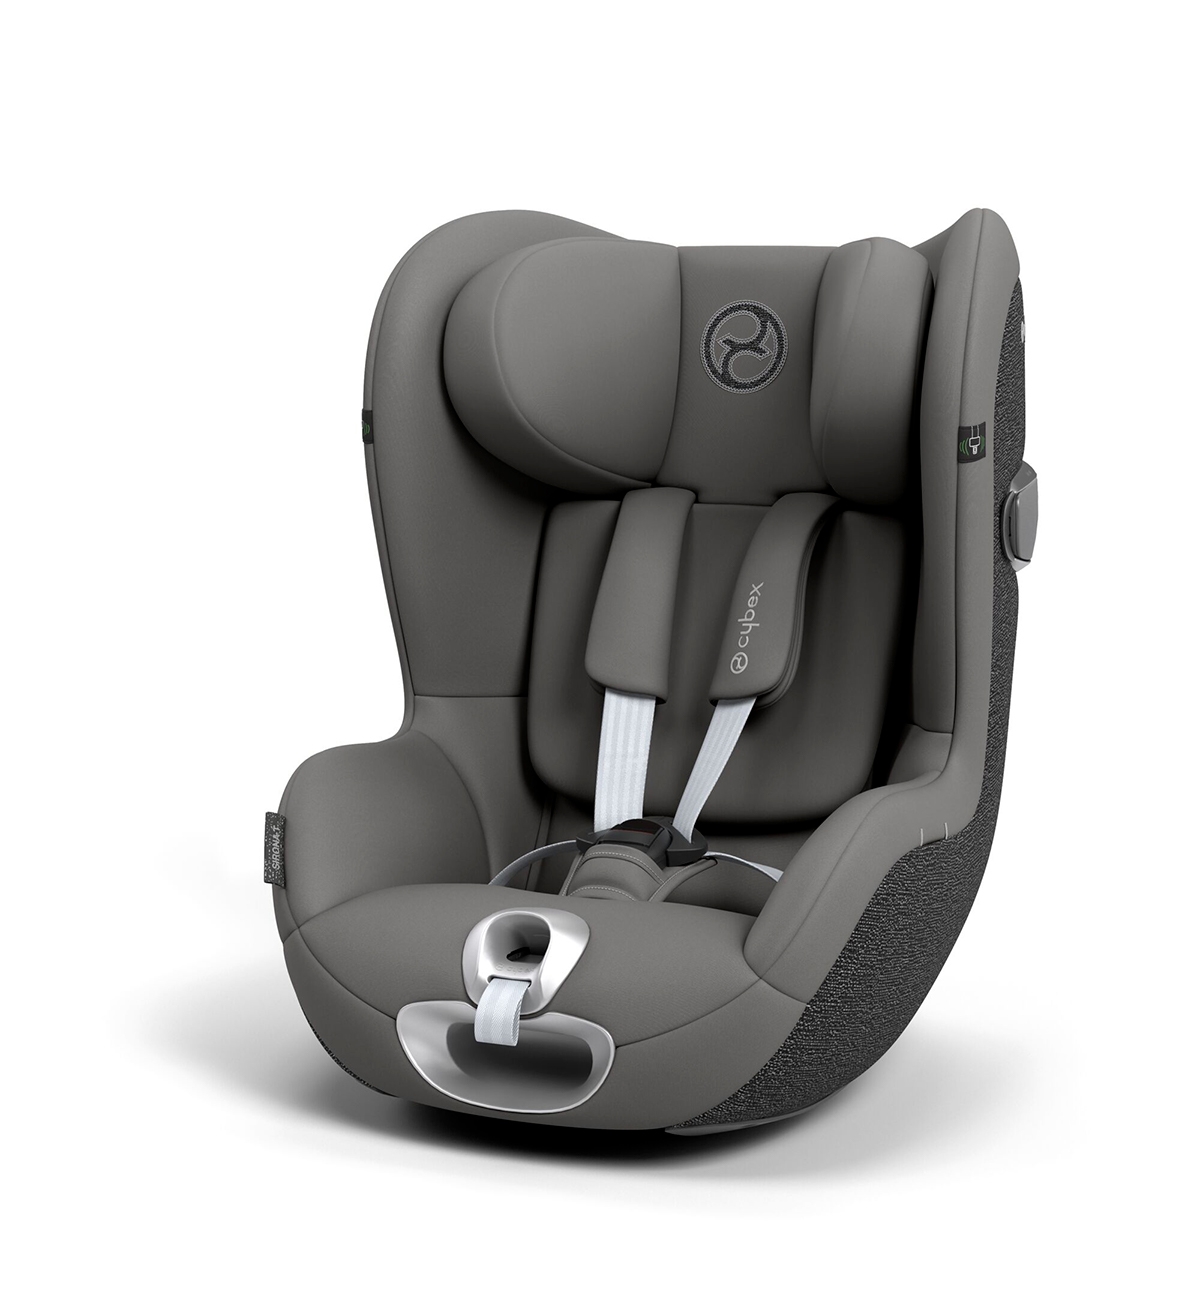 Seggiolino Auto Cybex Sirona T i-Size Comfort Mirage grey